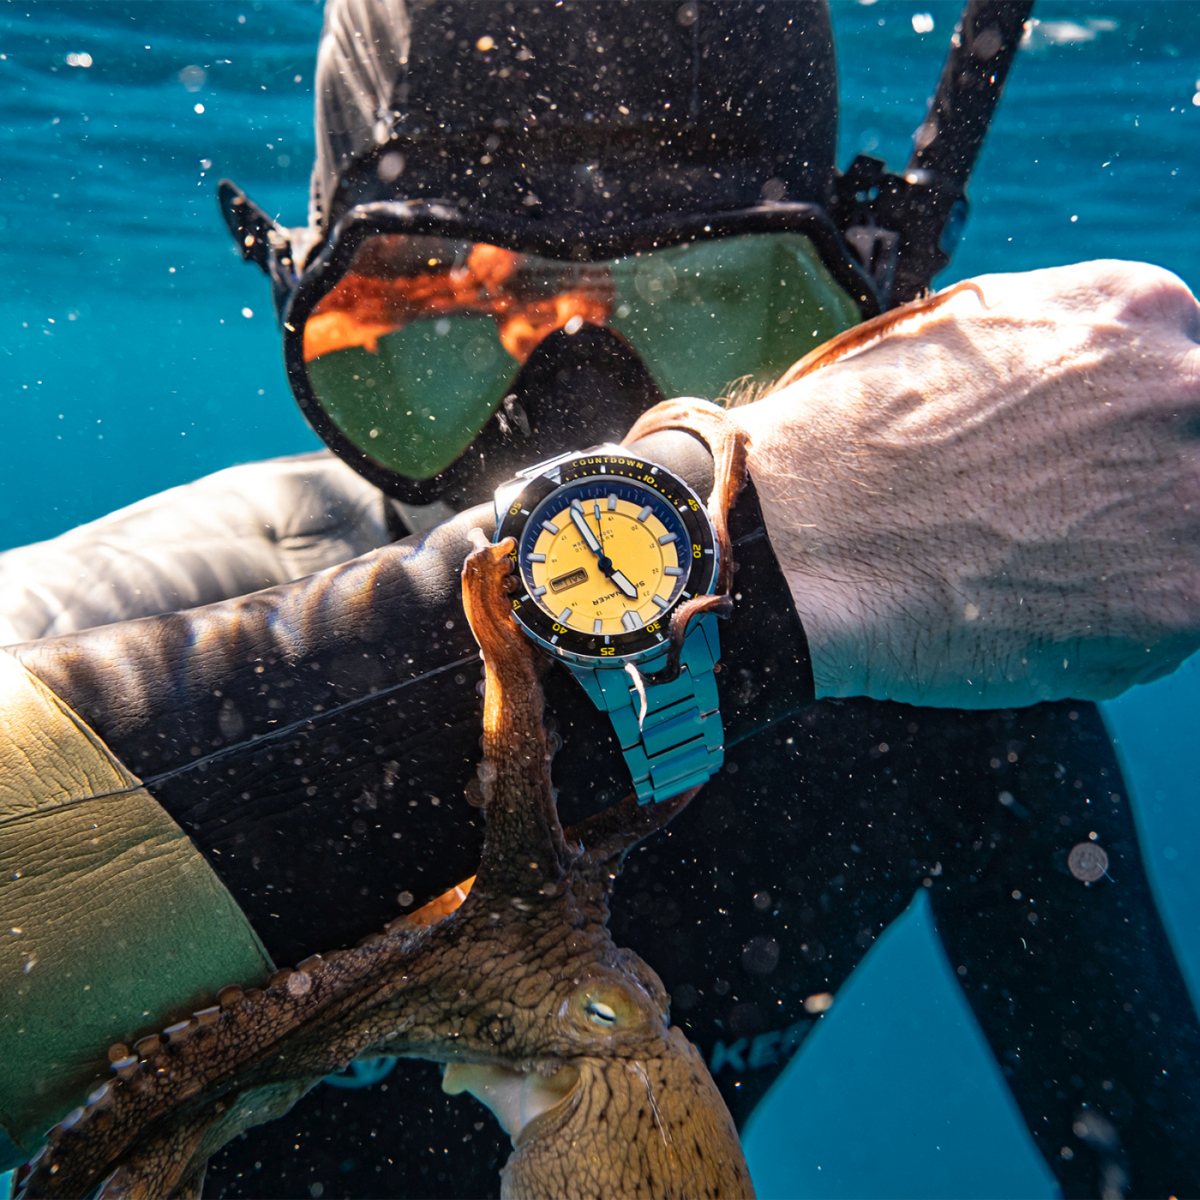 イタリア発の腕時計「SPINNAKER」の新作ダイバーズウォッチ「HASS AUTOMATIC」 - HEROES ONLINE